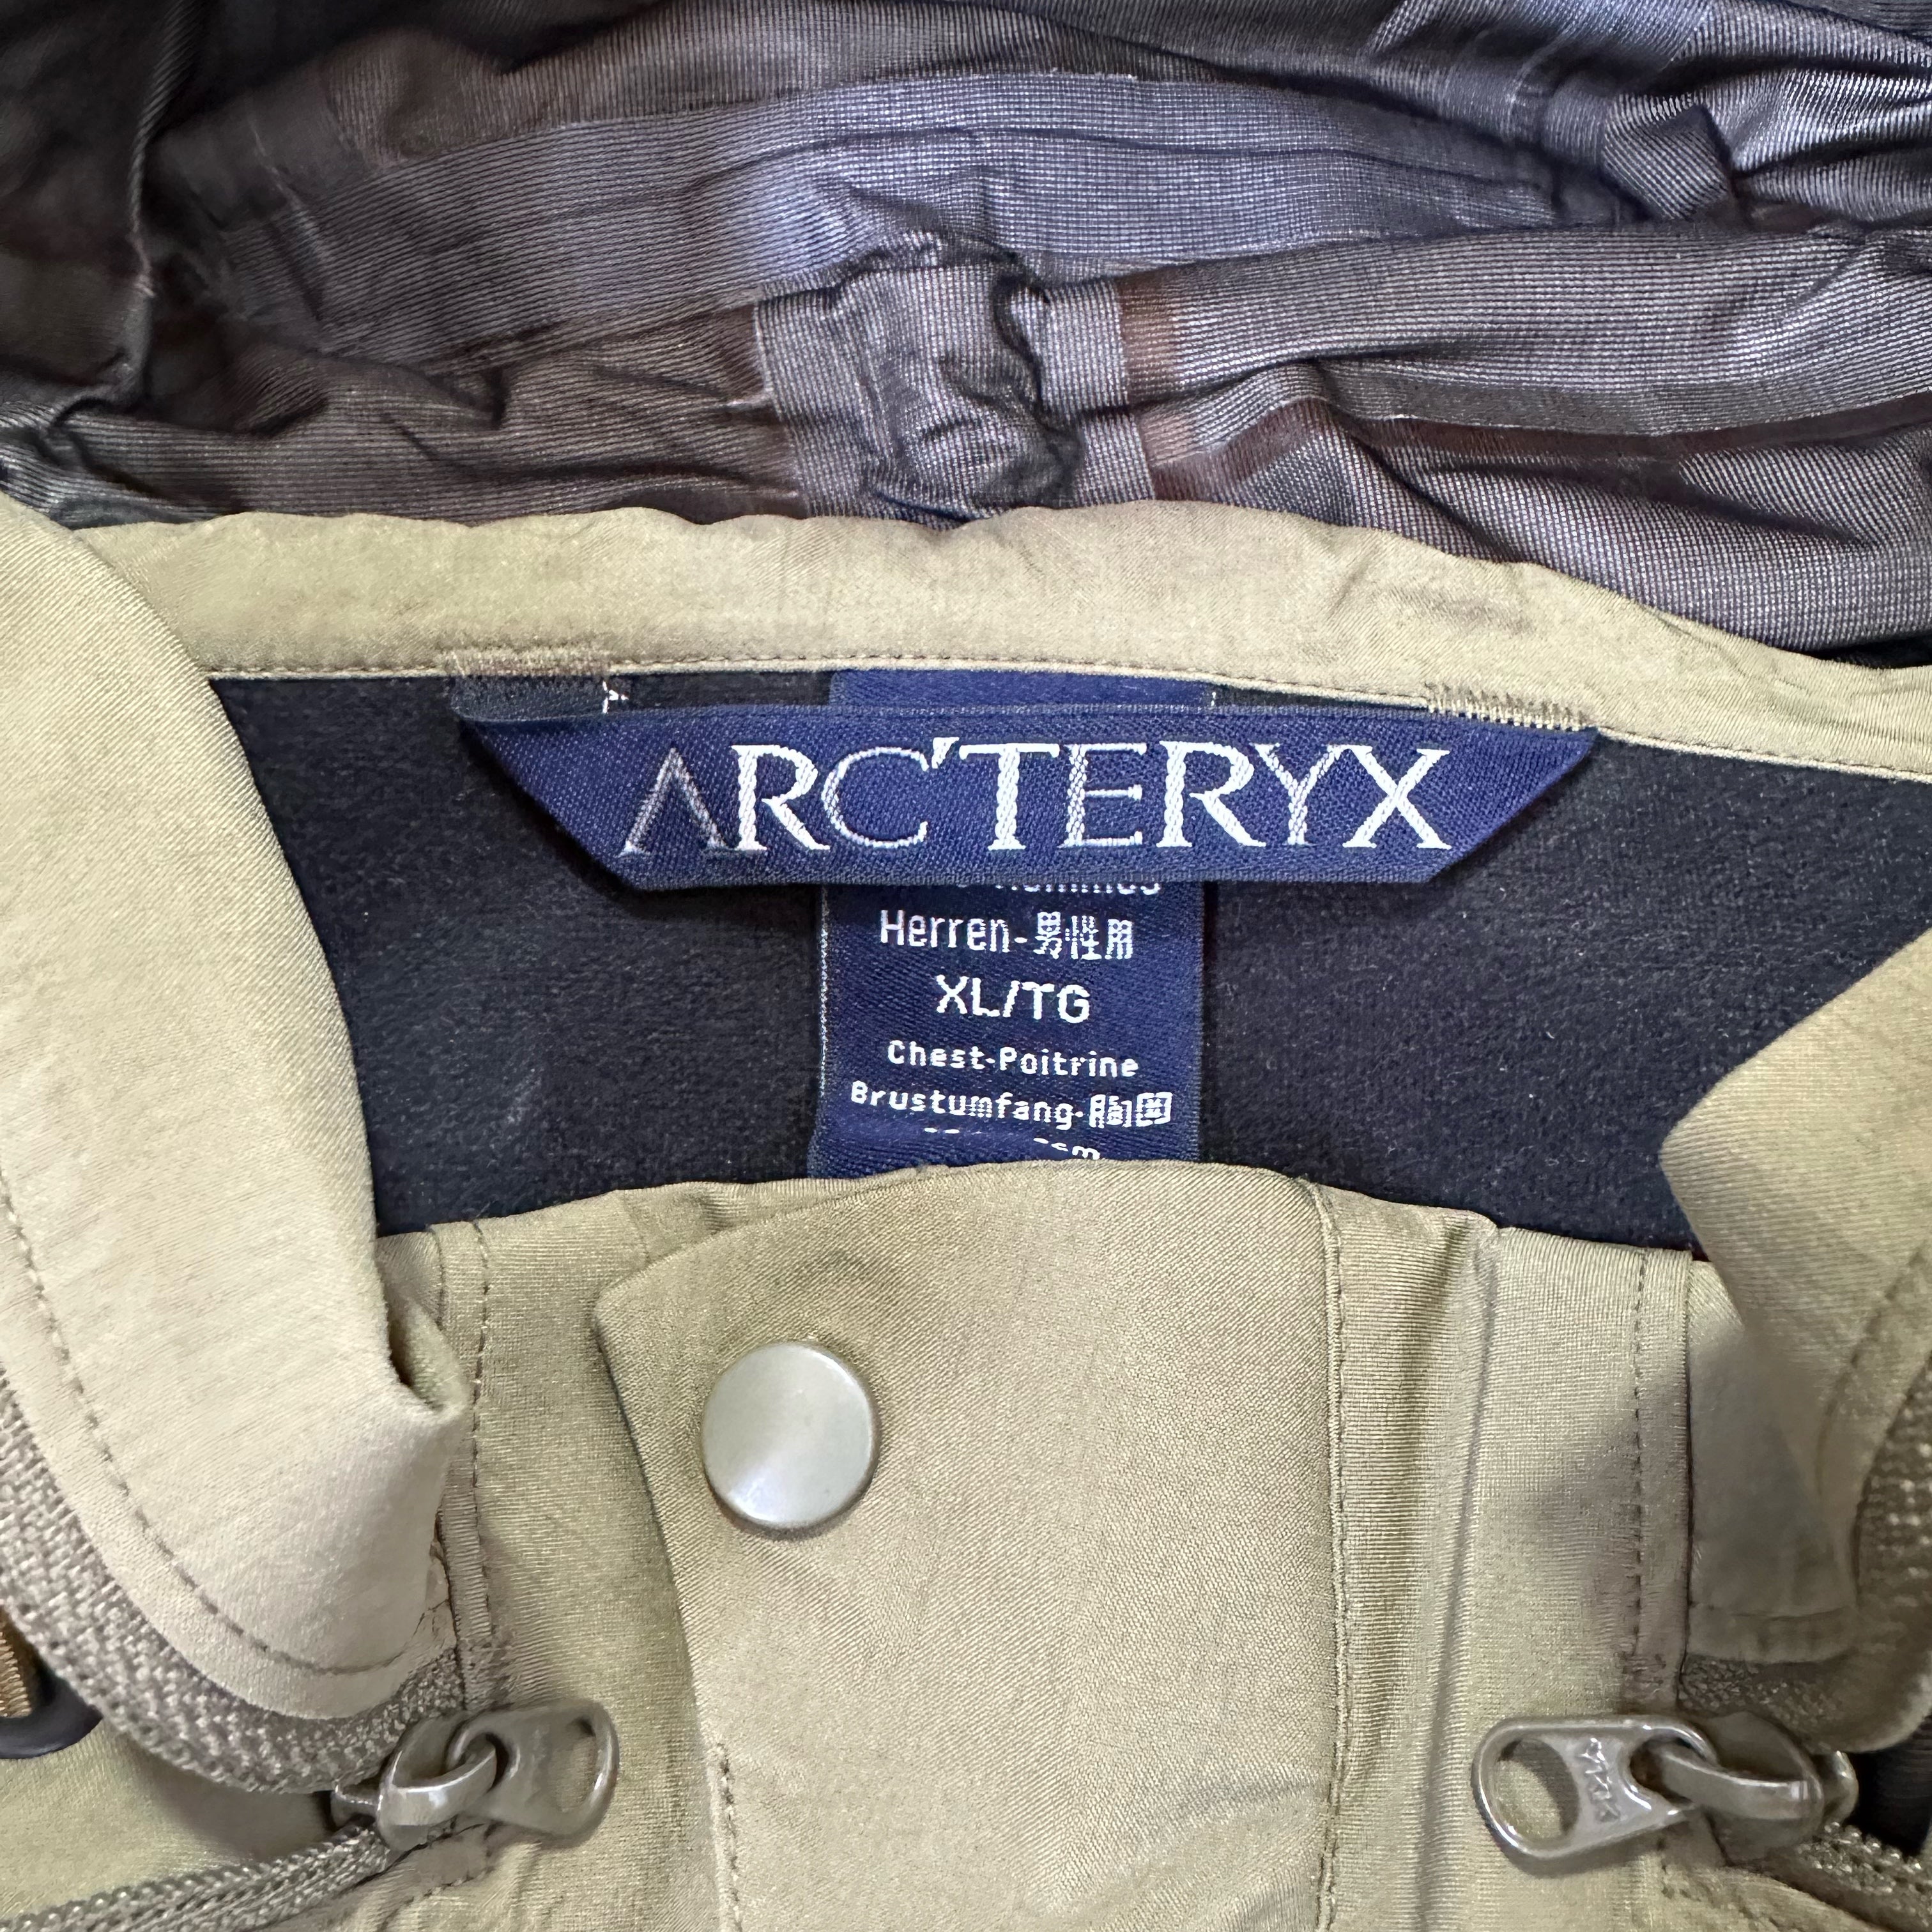 Arcteryx Leaf Generation 1 Alpha LT Goretex Jacket